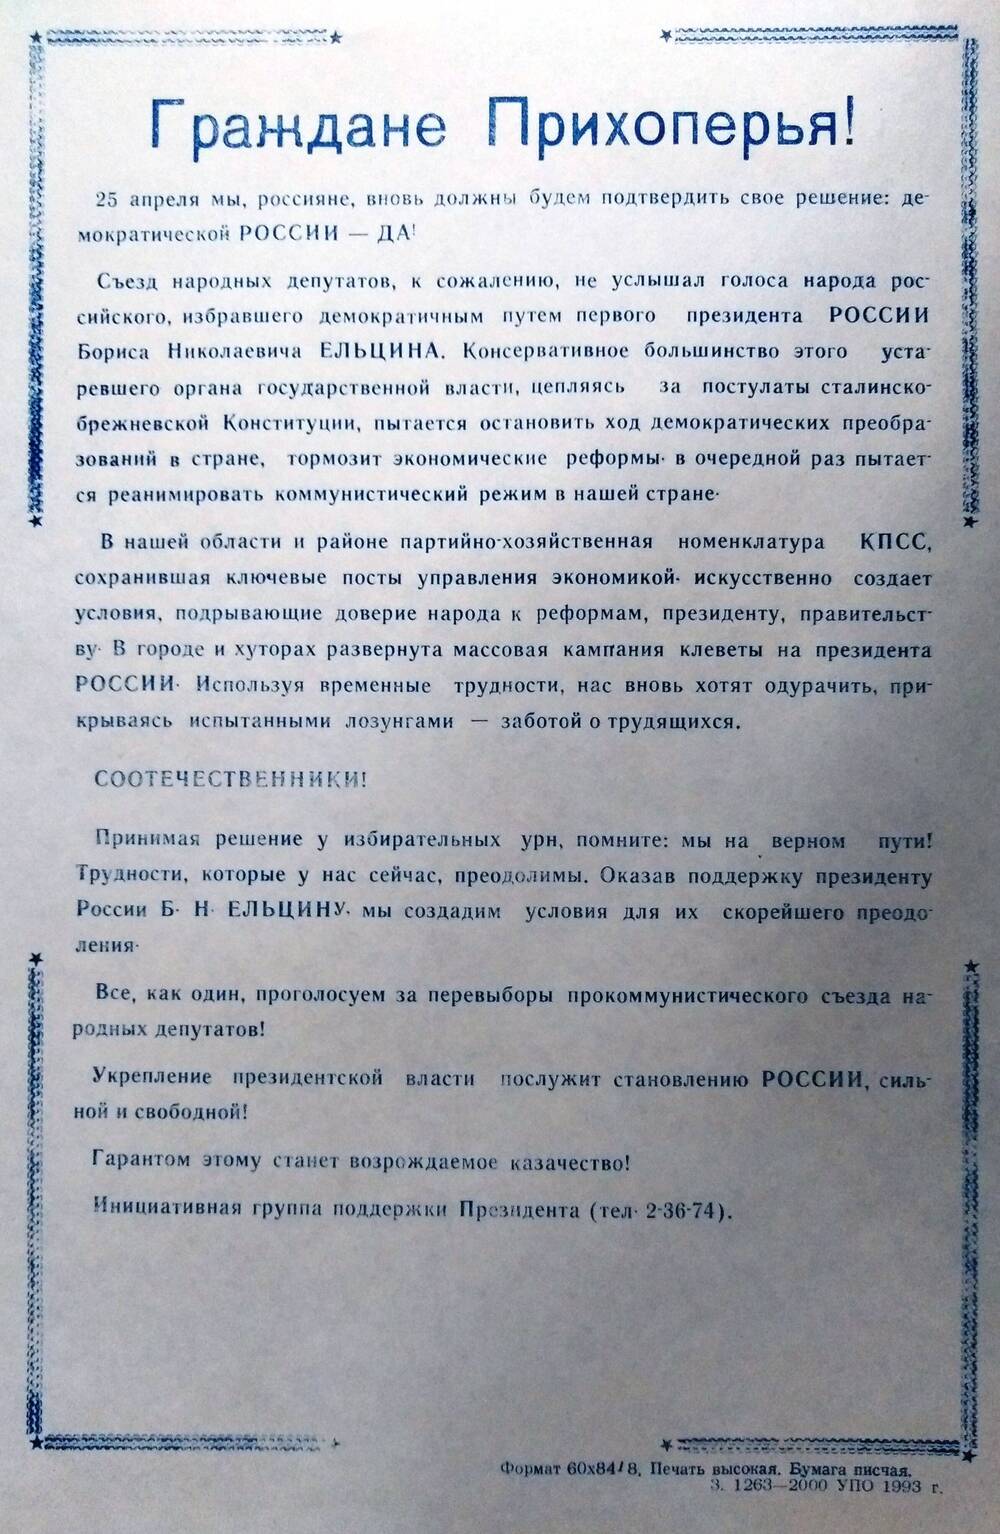 Обращение к гражданам Прихоперья, перед референдумом 25 апреля
 1993 г.